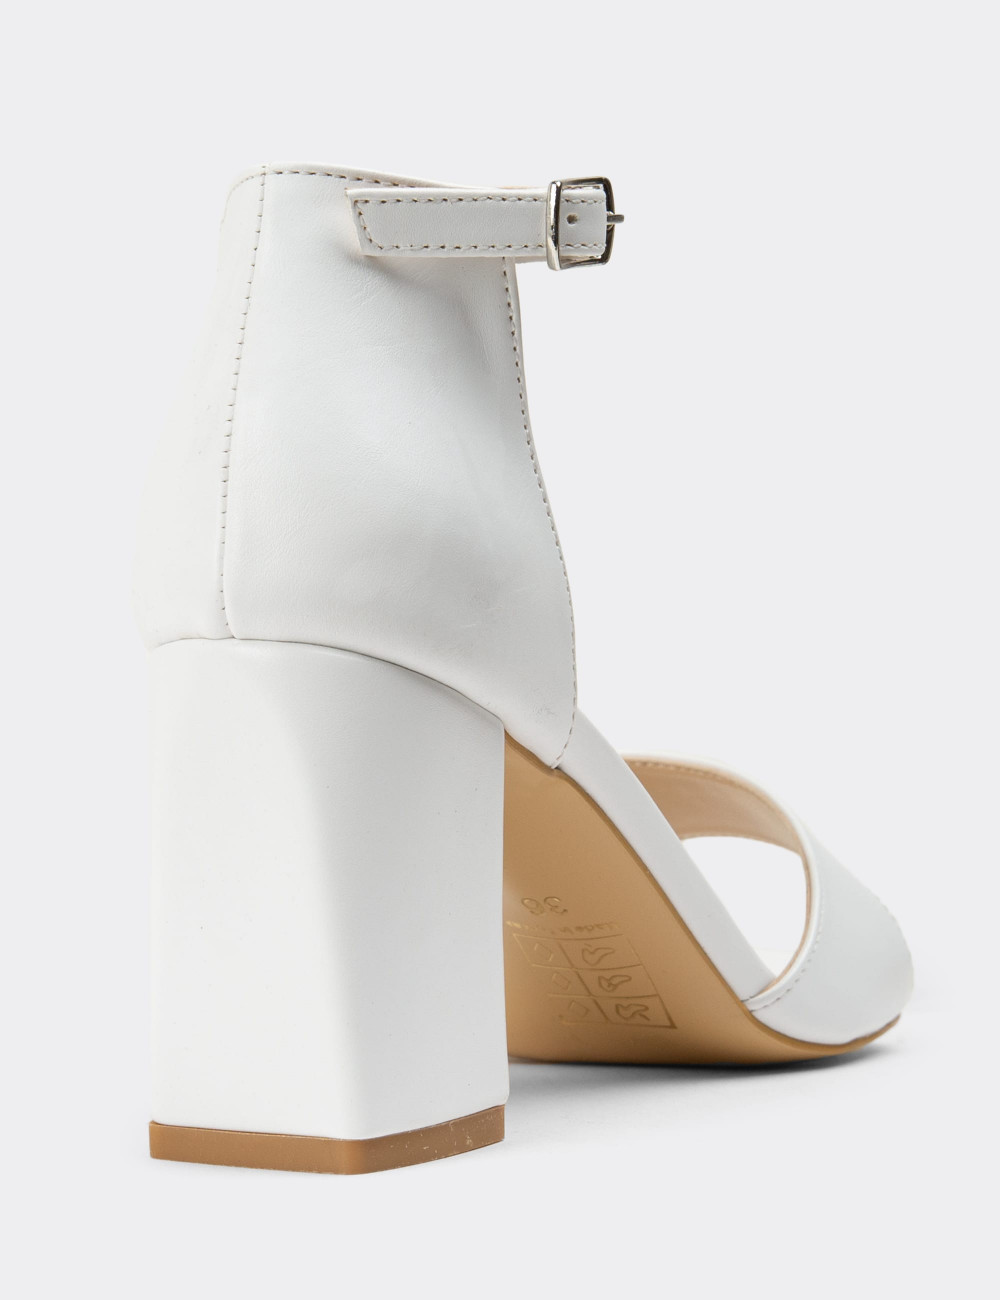 Beyaz Kadın Topuklu Sandalet - K0851ZBYZM01